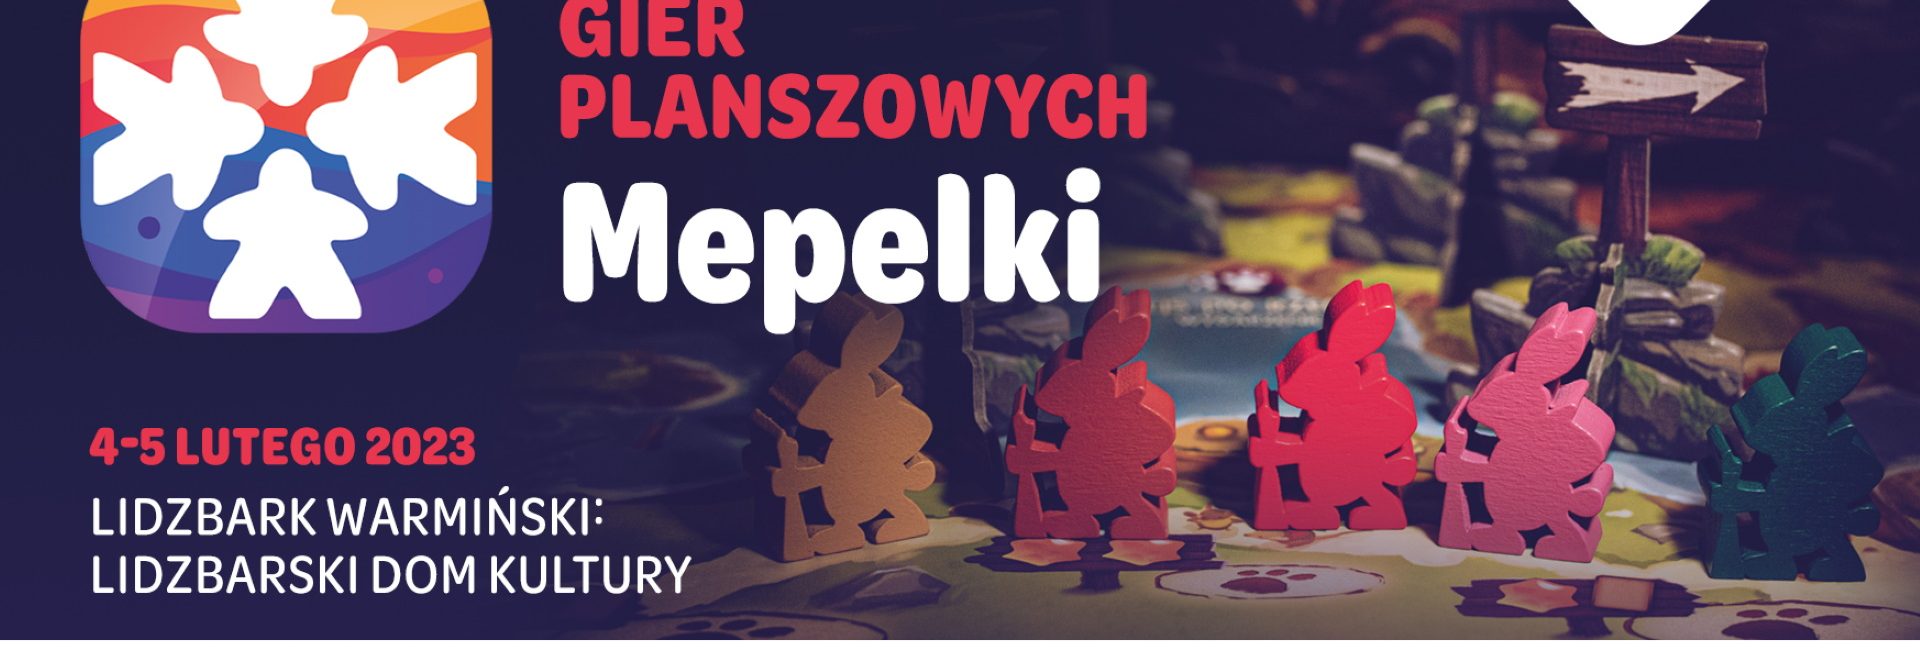 Plakat zapraszający w dniach 4-5 lutego 2023 r. do Lidzbarka Warmińskiego na Festiwal GIER PLANSZOWYCH MEPELKI - Lidzbark Warmiński 2023.